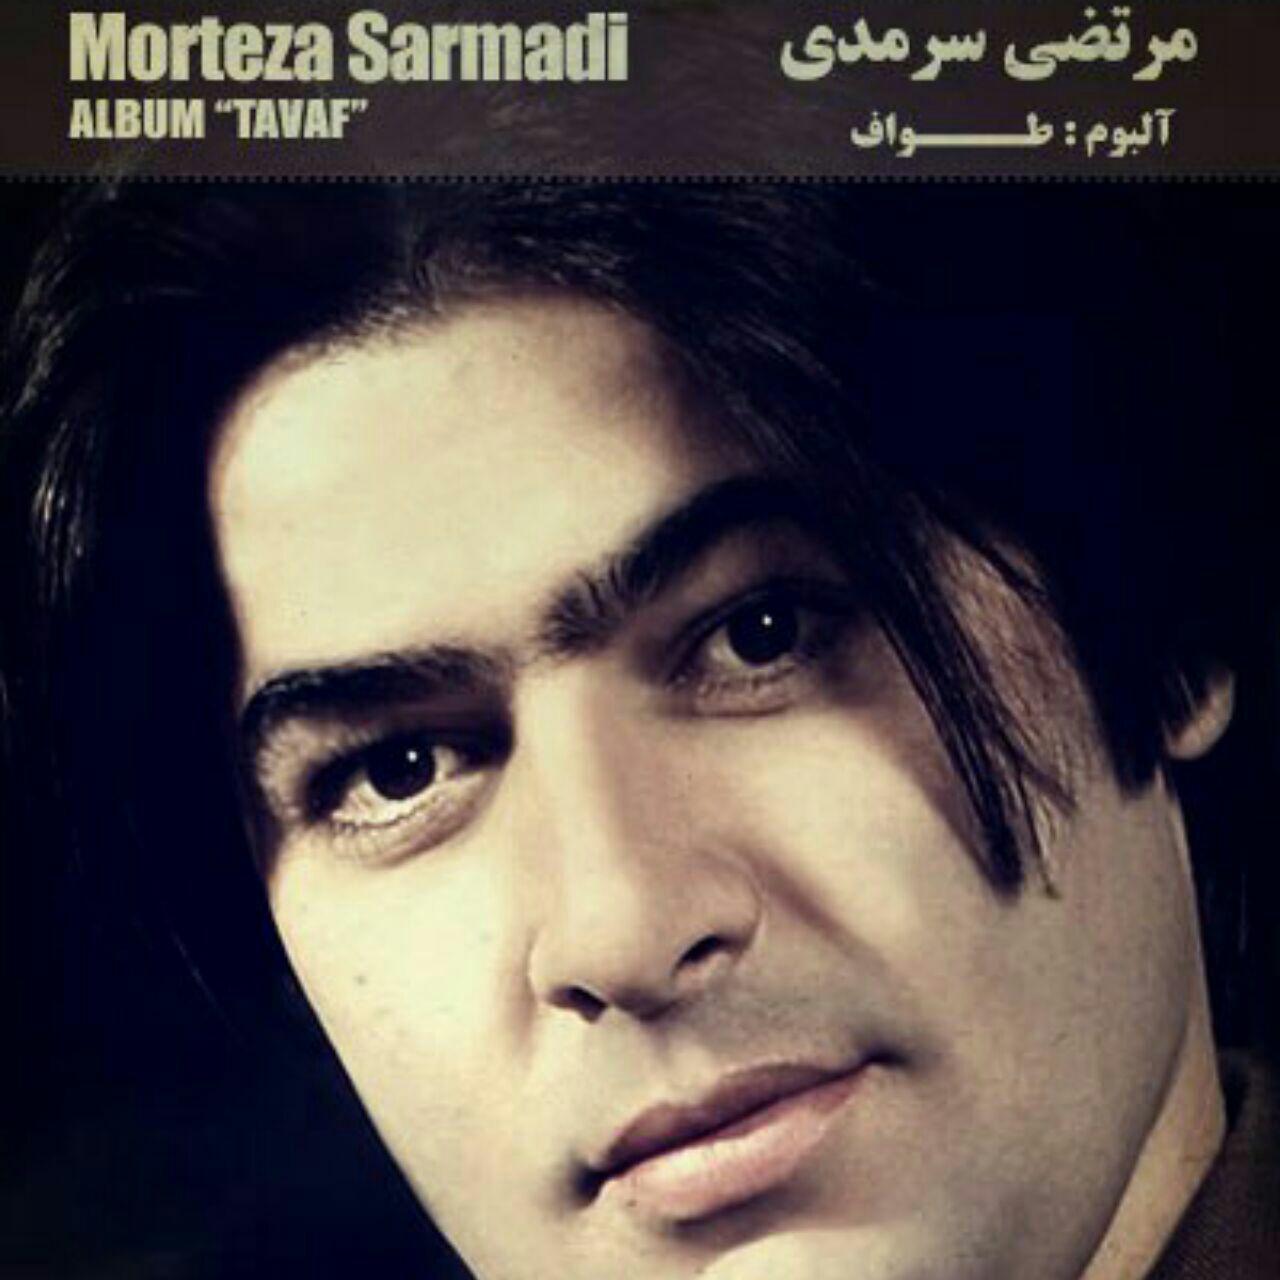  دانلود آهنگ جدید مرتضی سرمدی - بی هم زبون | Download New Music By Morteza Sarmadi - Bi Hamzabun